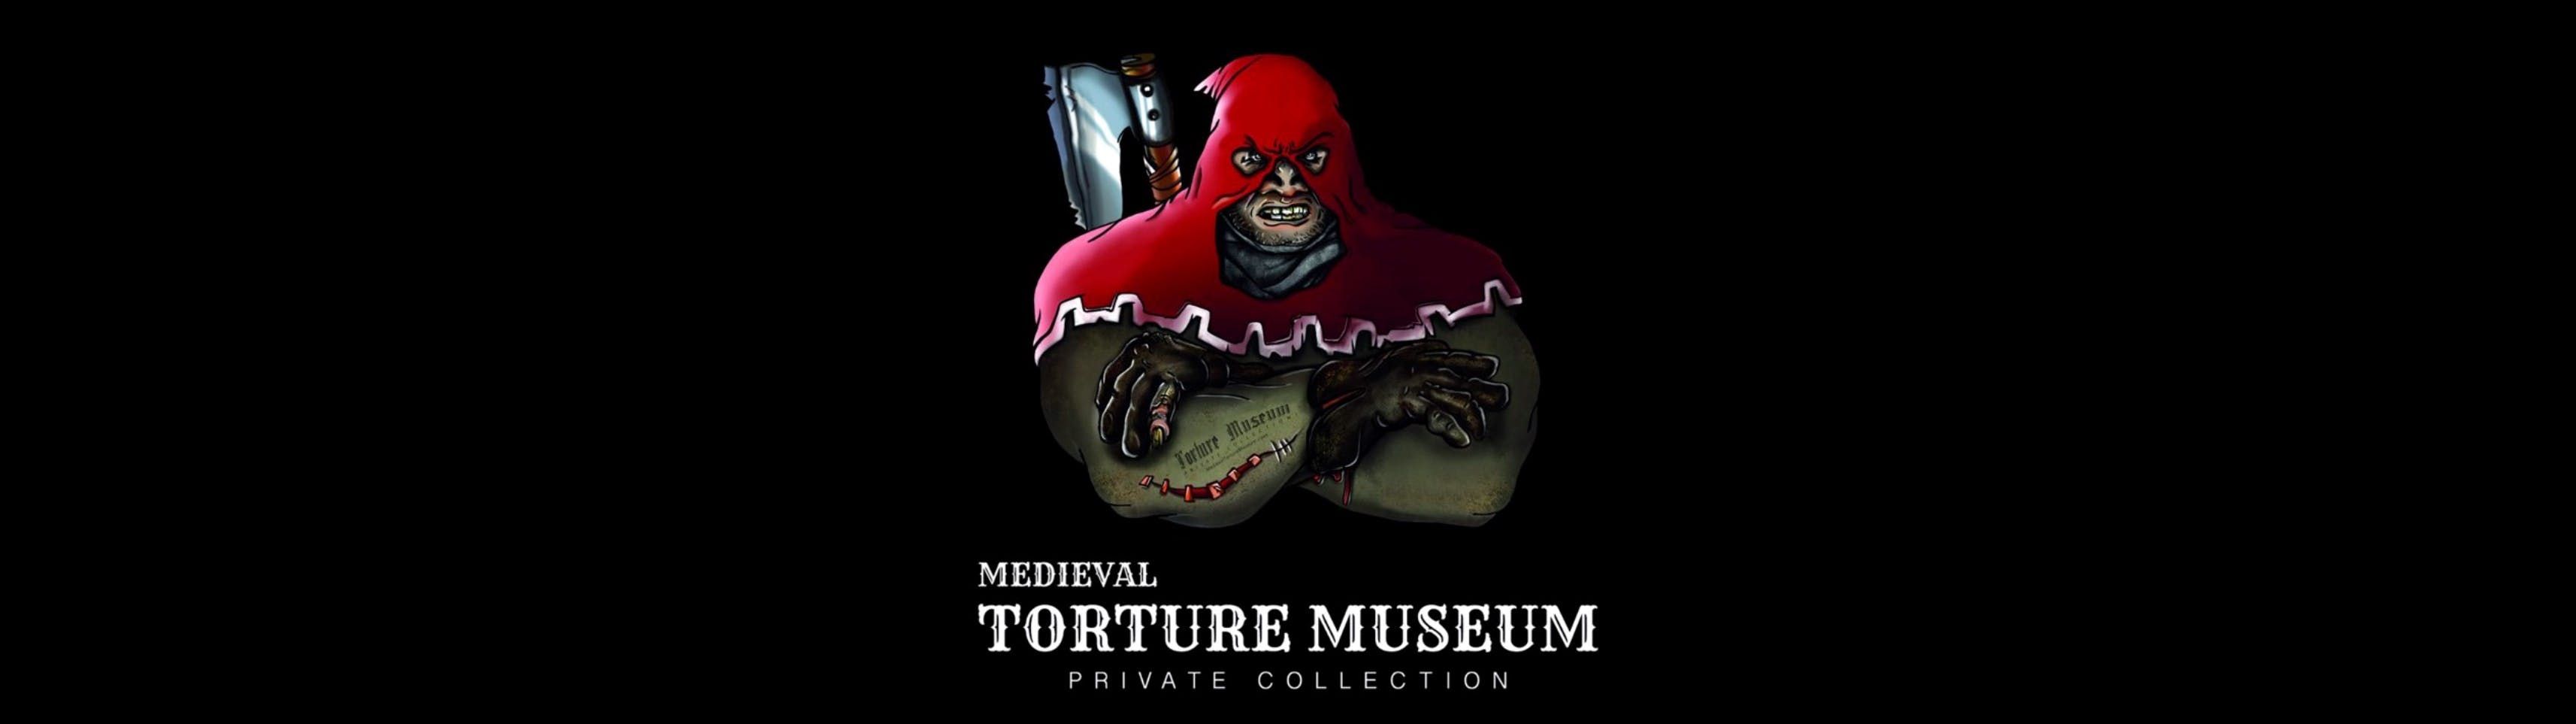 Imagen del tour: Museo de la tortura medieval con audioguía y experiencia de caza de fantasmas